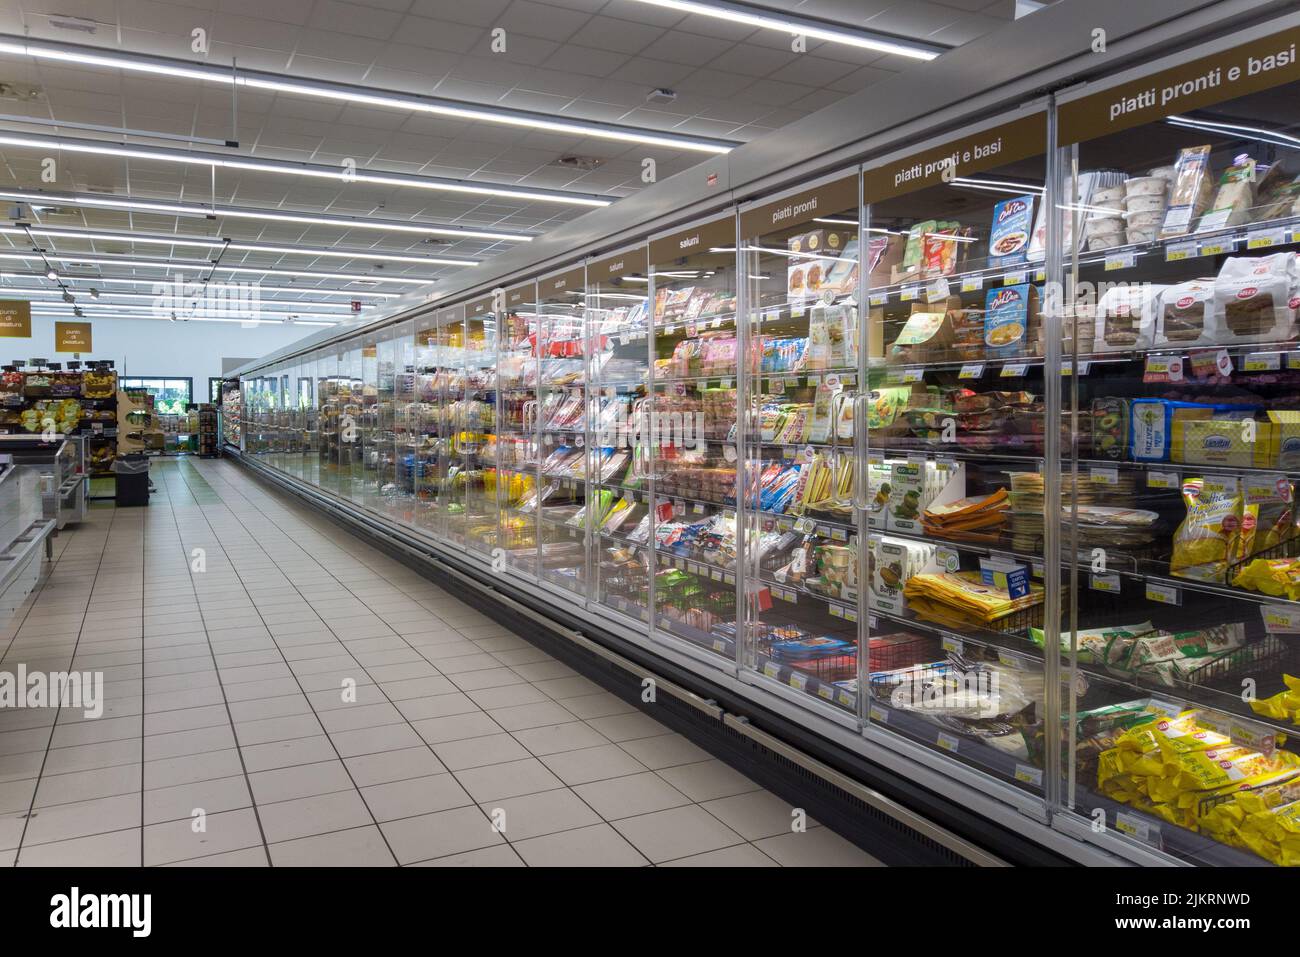 Fossano, Cuneo, Italia - 02 agosto 2022: Scaffalatura lunga in frigorifero con cibi pronti e salumi confezionati nel supermercato italiano della Mercatò Foto Stock